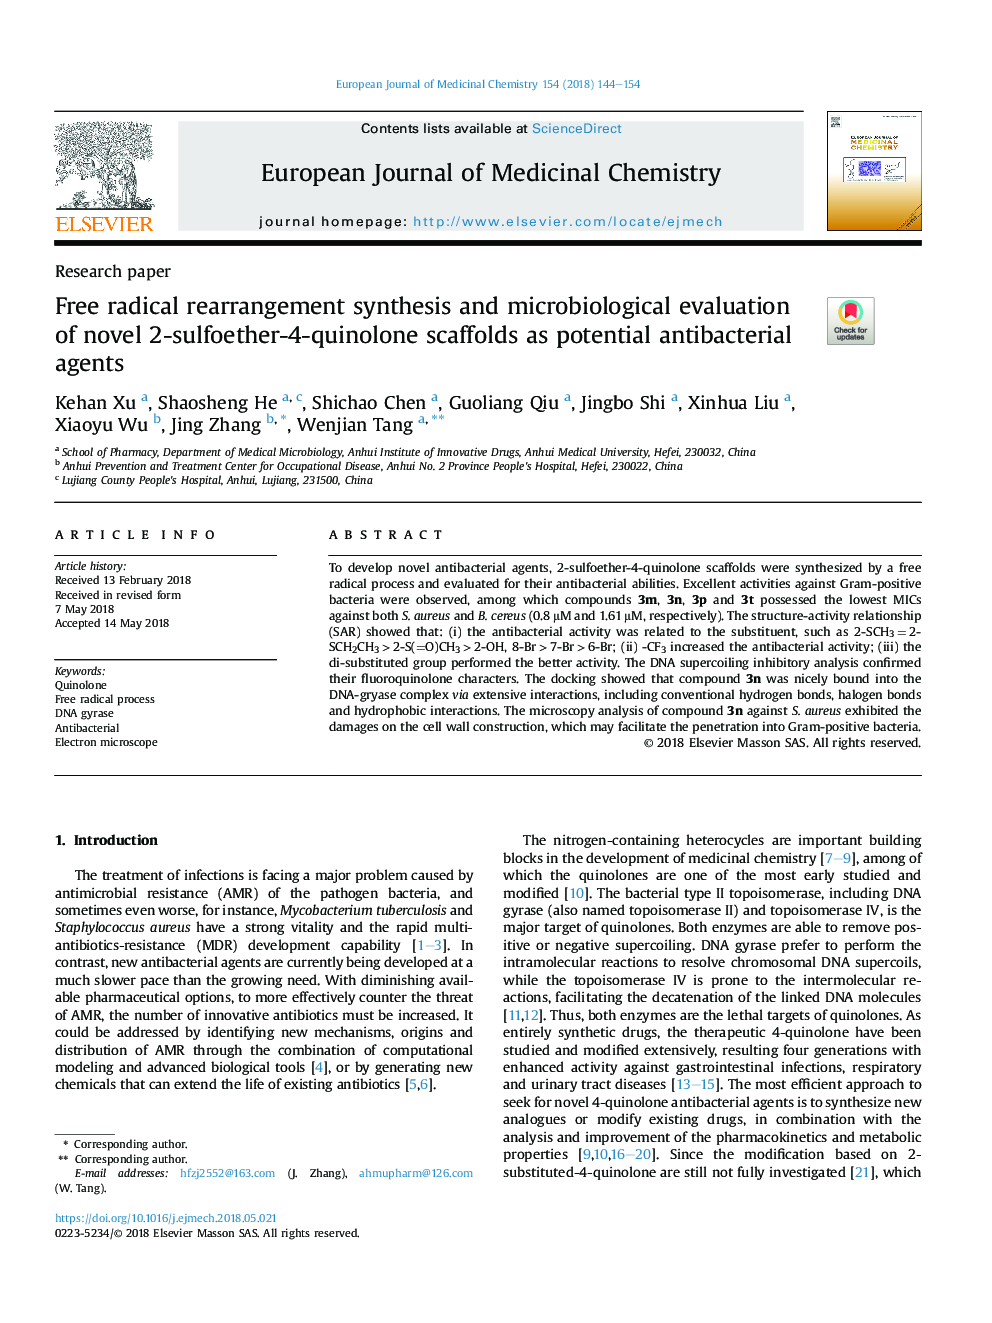 سنتز بازسازی آزاد رادیکال آزاد و ارزیابی میکروبیولوژیک داربست های جدید 2-سولفوره-4-کینولون به عنوان عوامل بالقوه آنتی باکتریال 